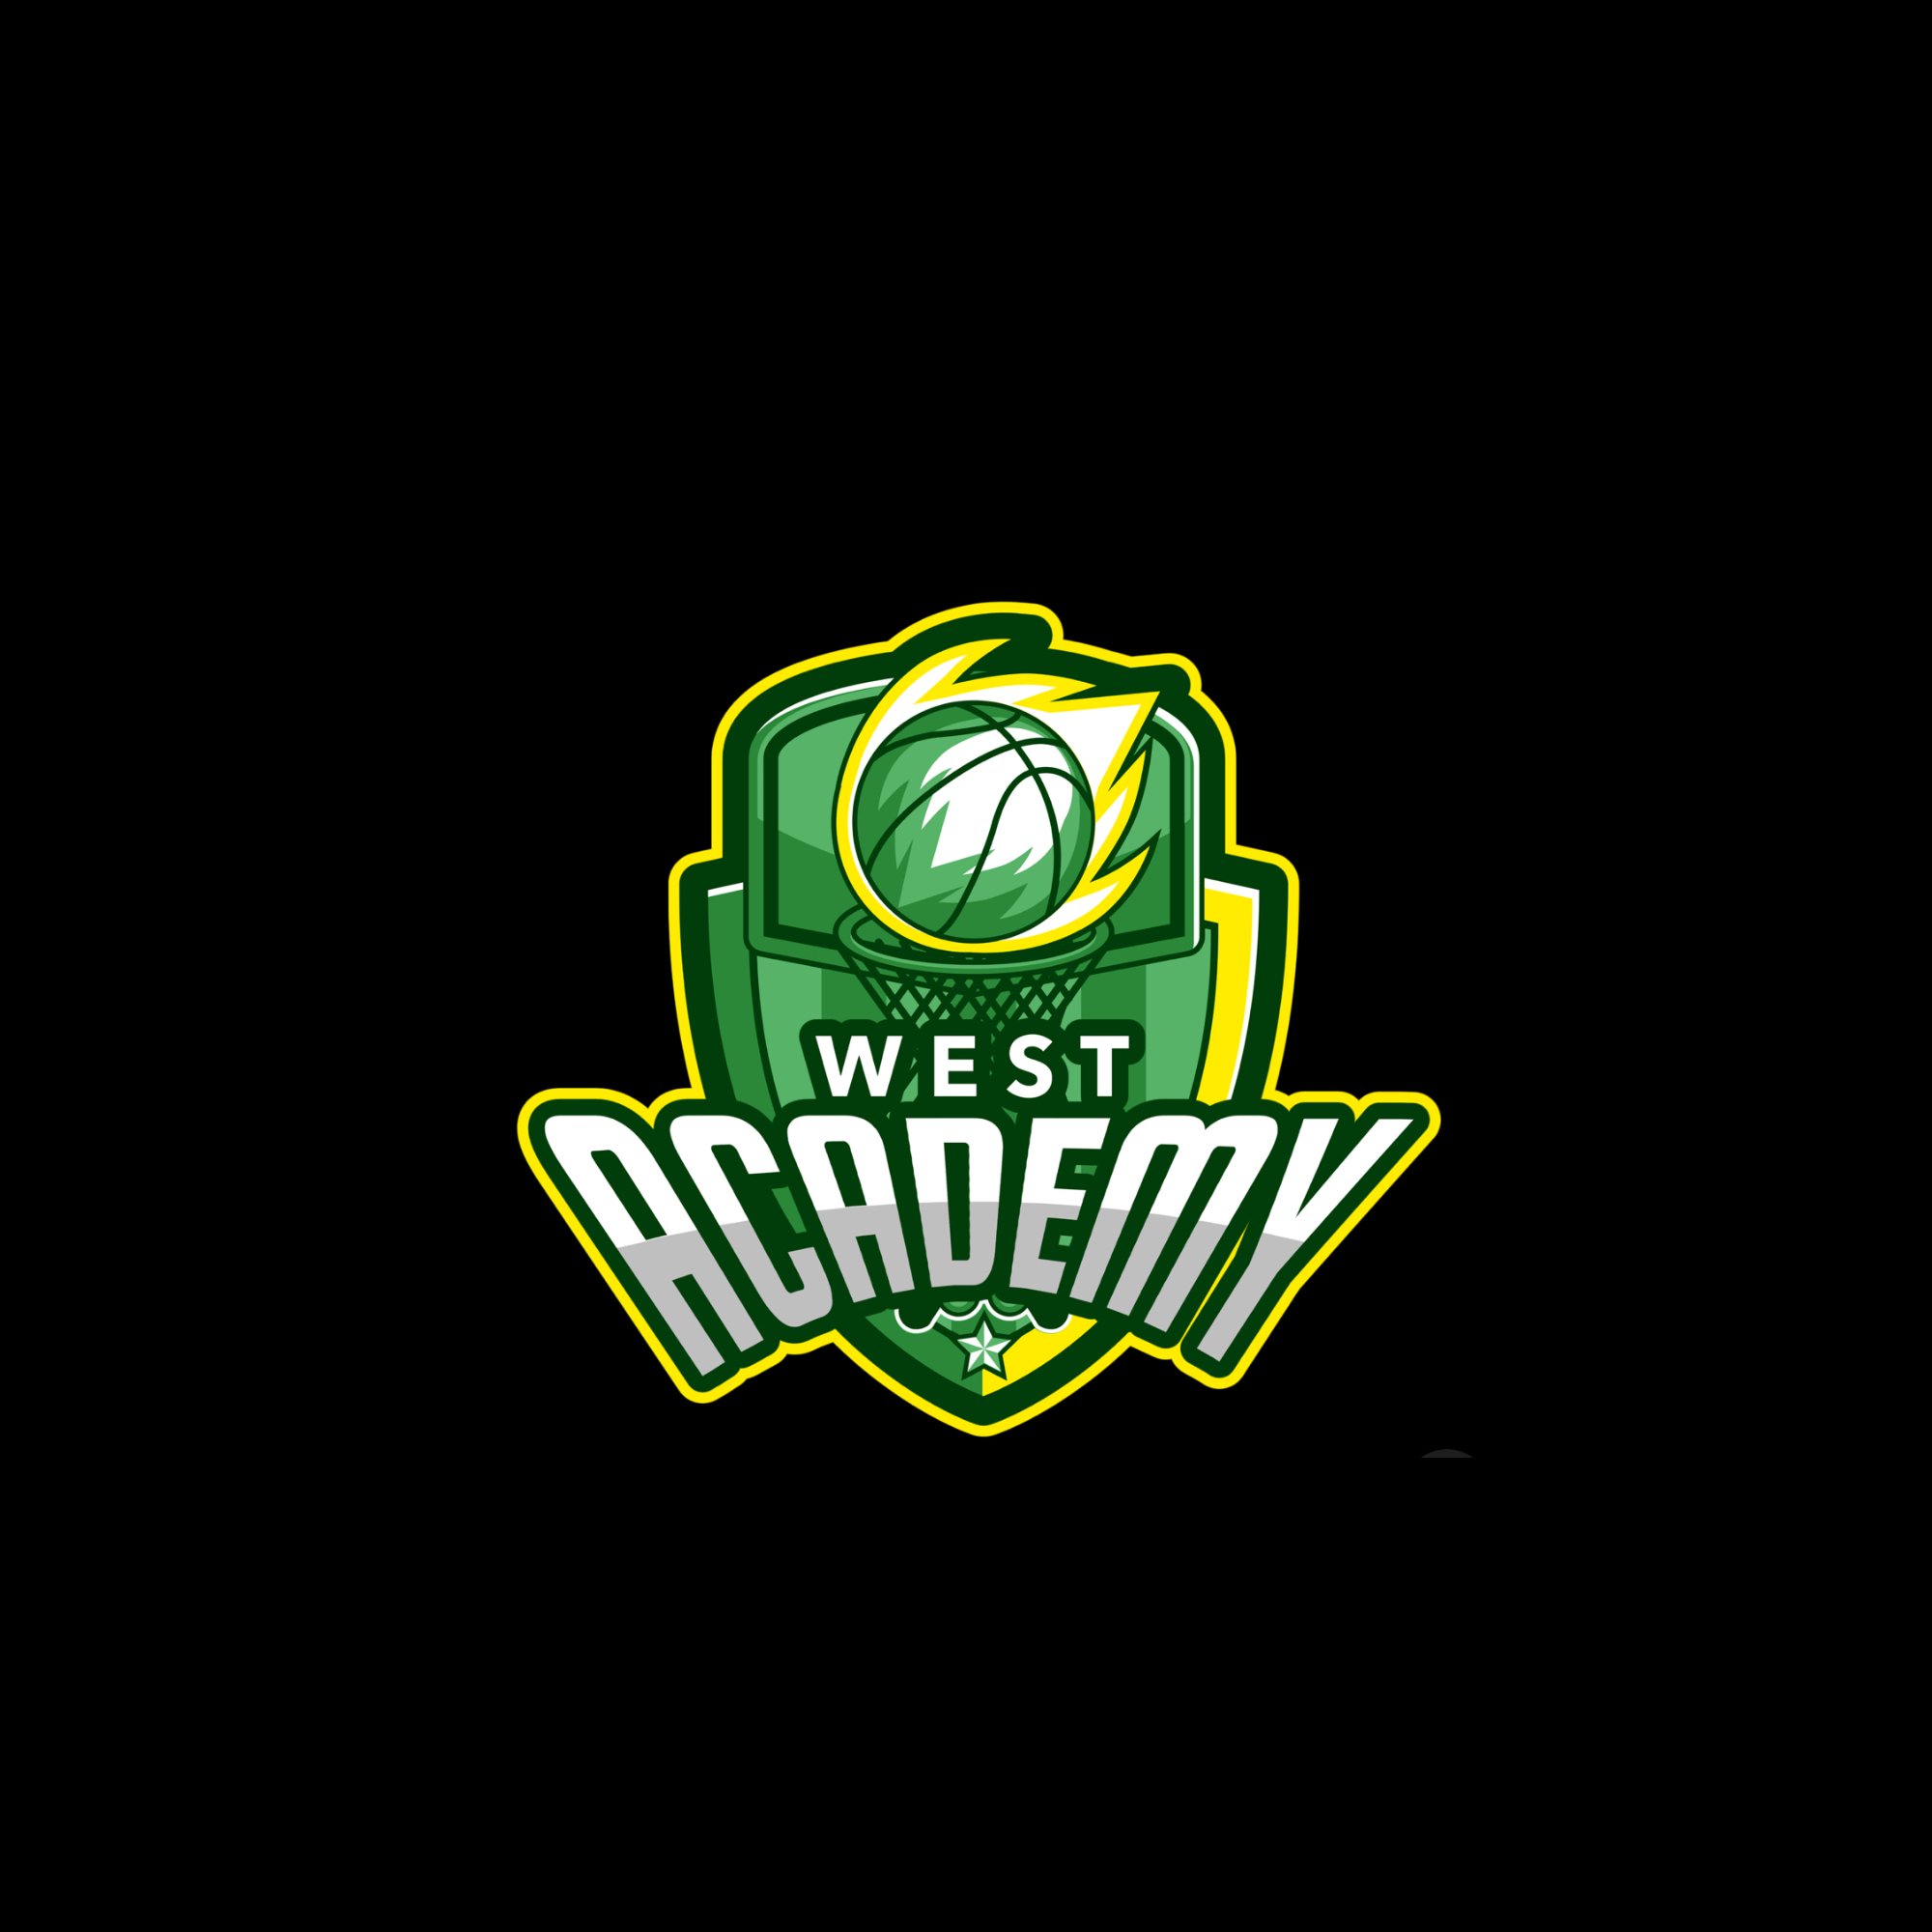 Organization logo for West Academy